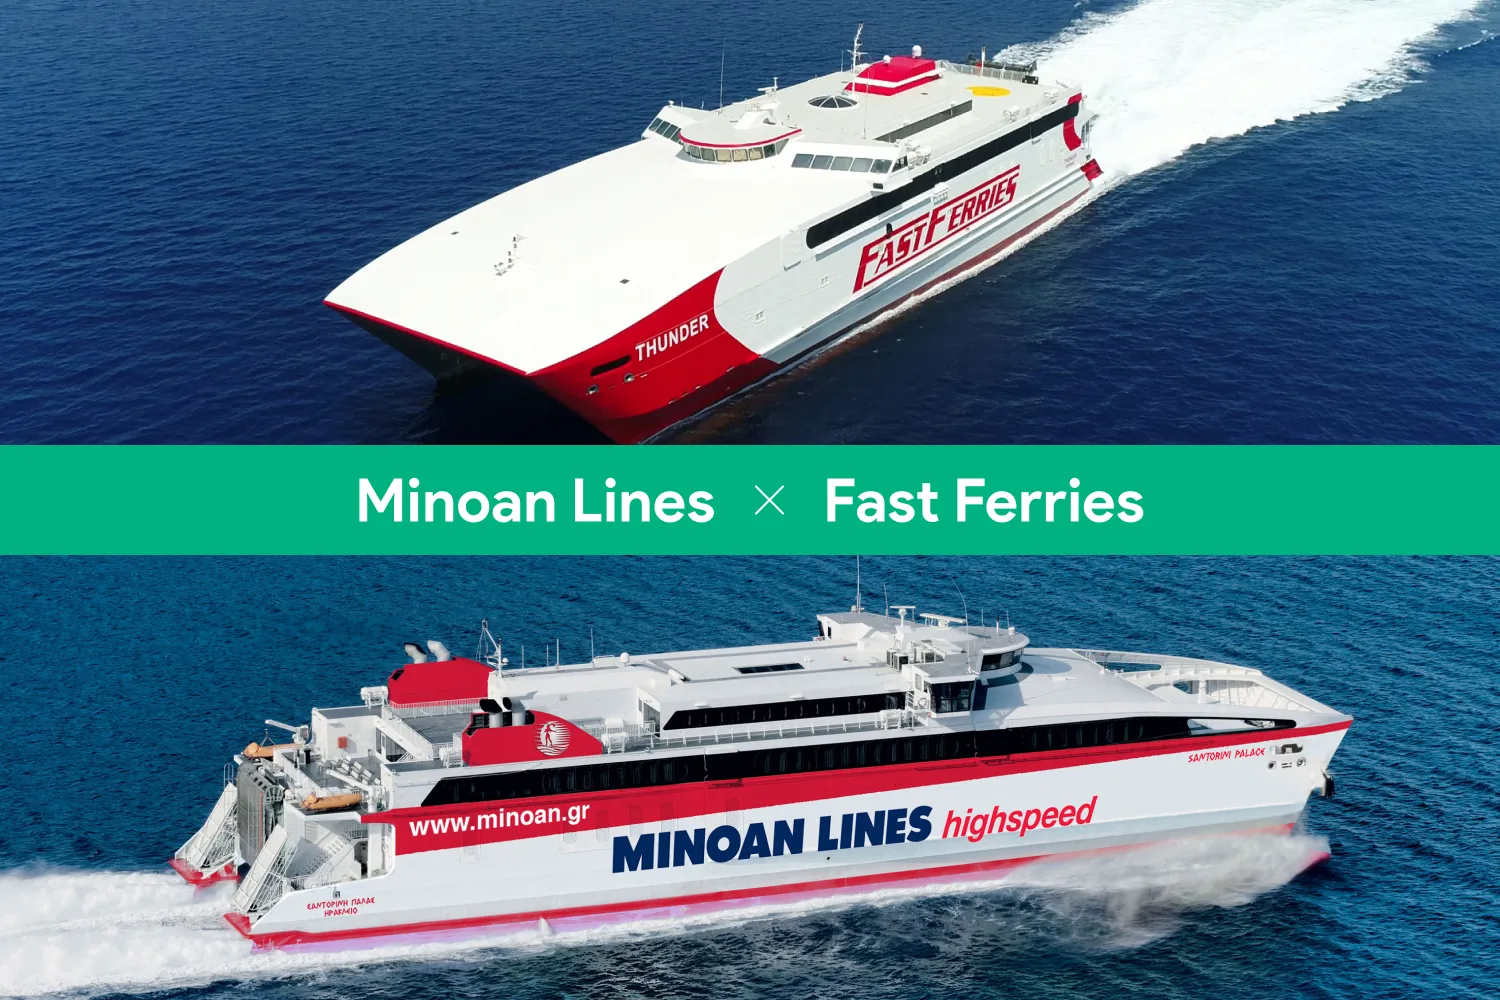 Fotocollage bestehend aus zwei high-speed Schiffen, eins der Reederei Fast Ferries und eins der Minoan Lines.